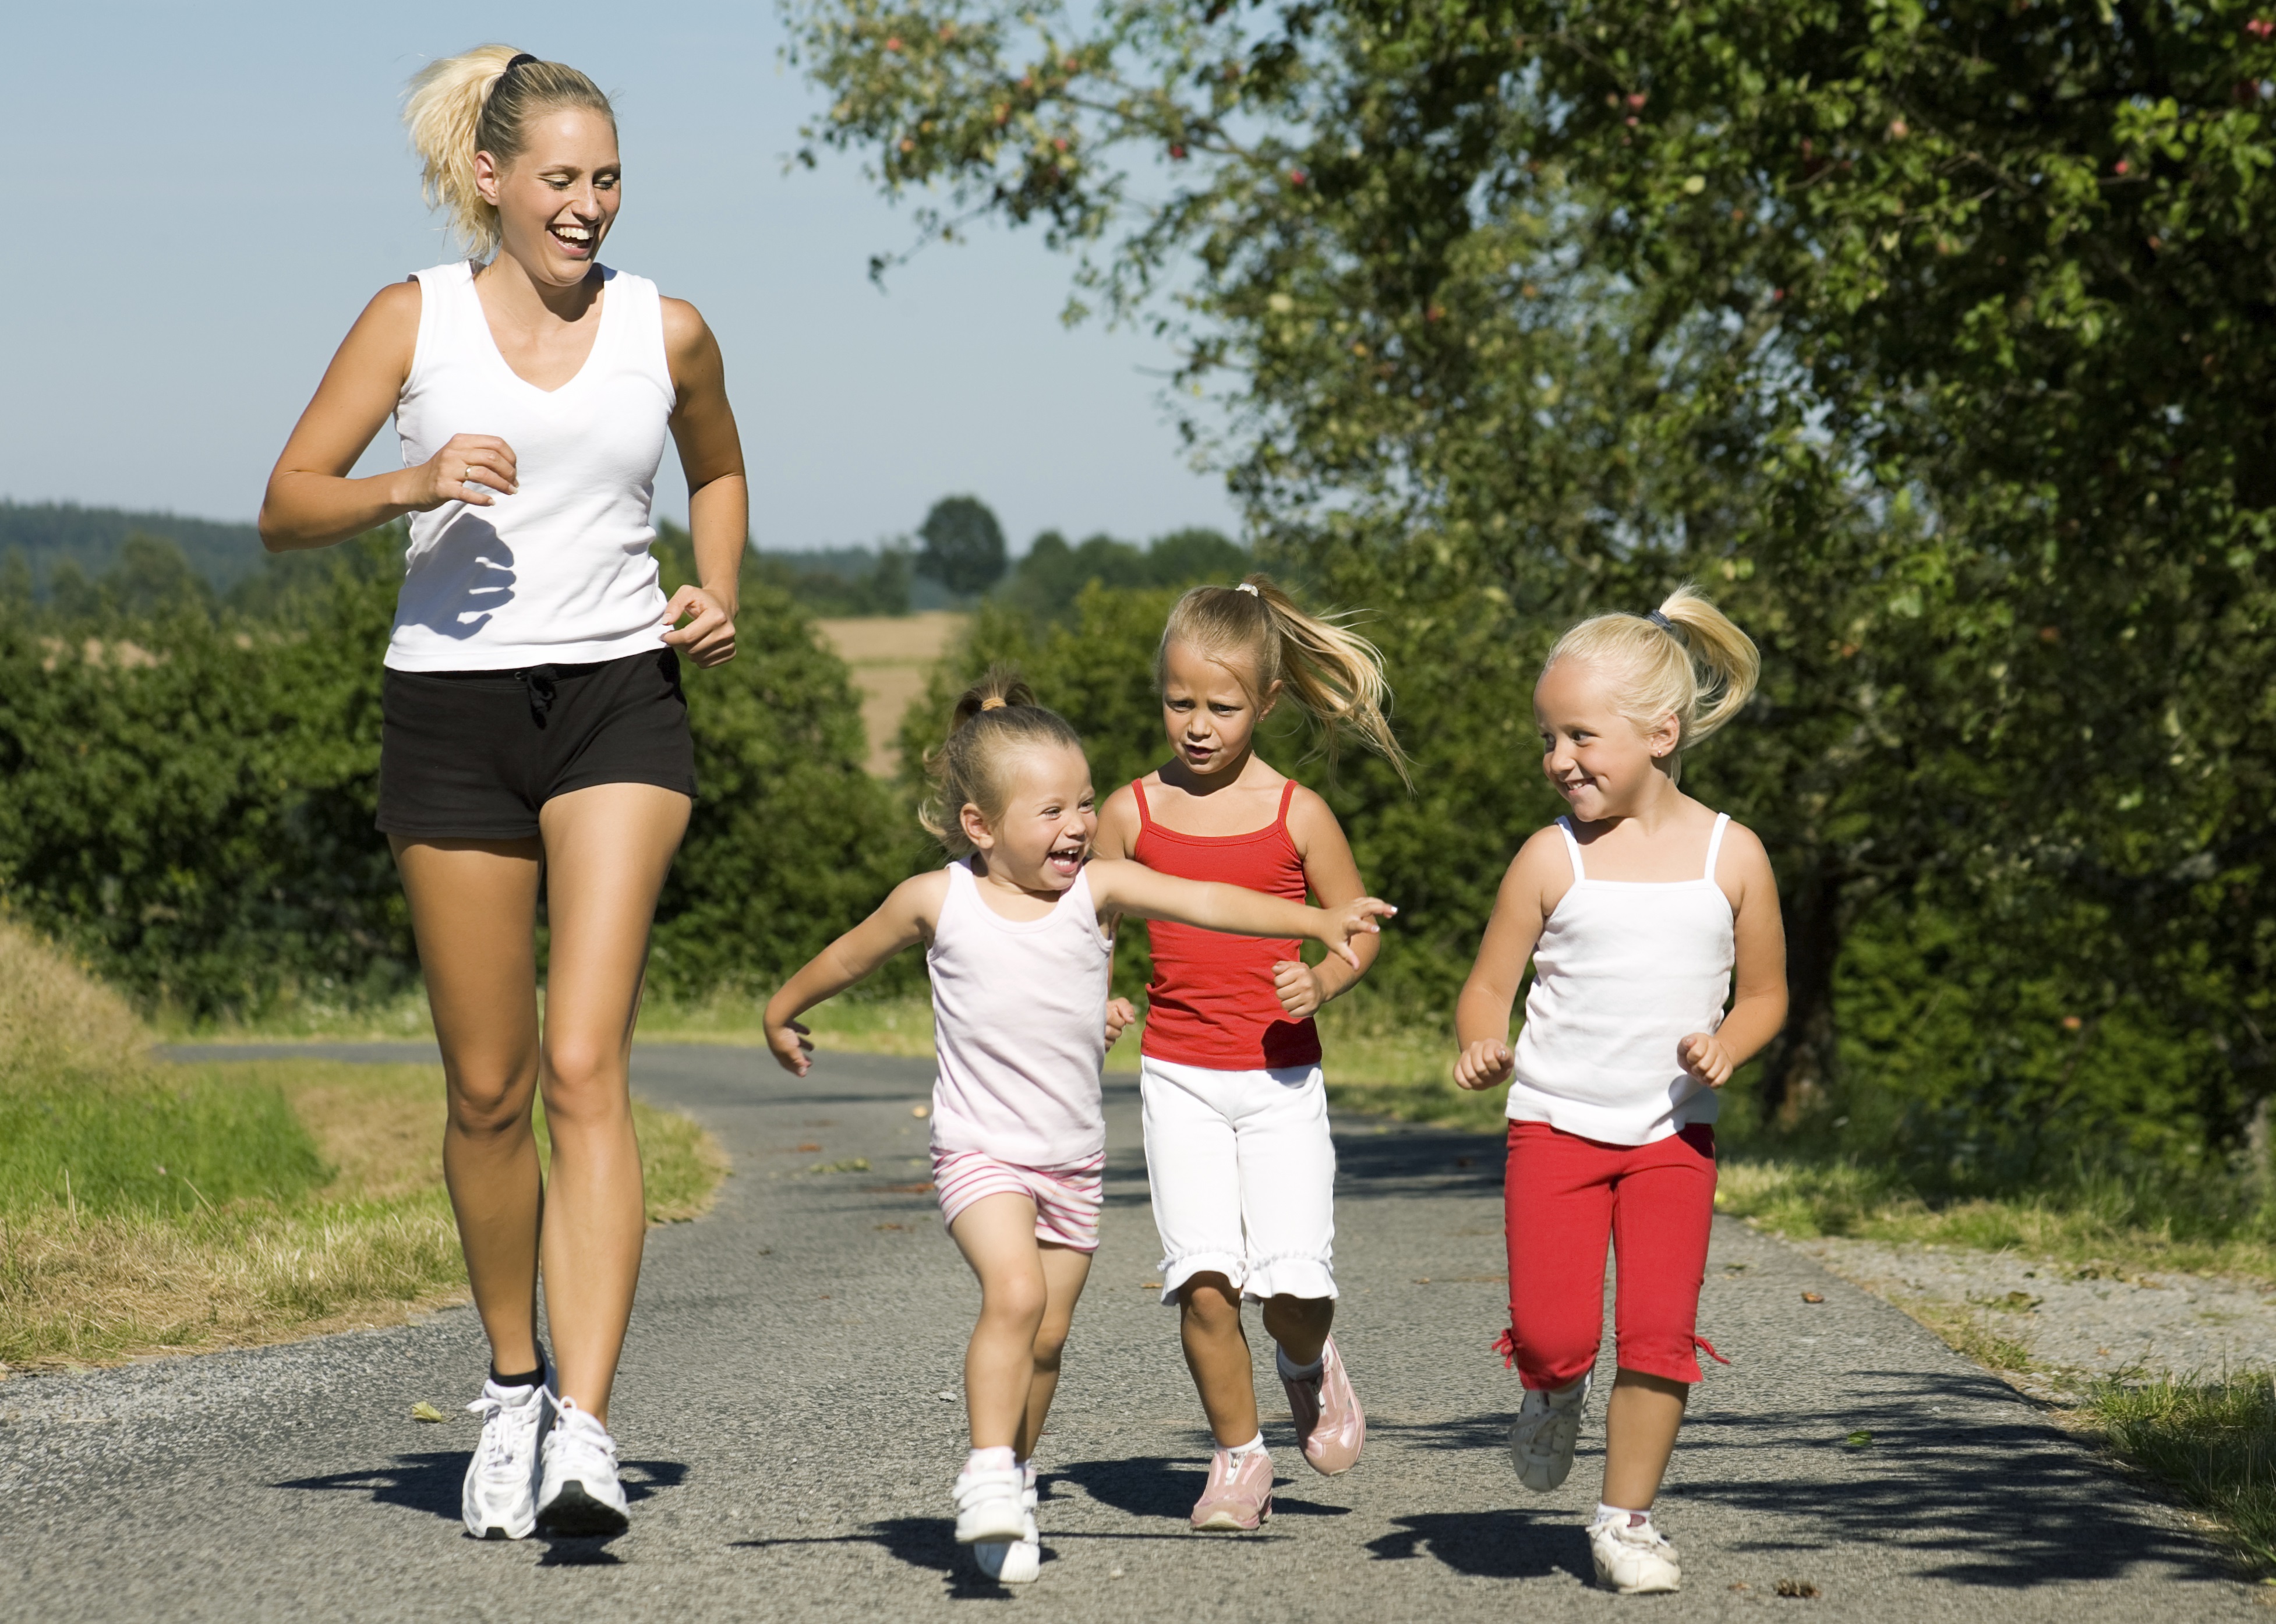 Организма в любом возрасте. Спортивные дети. Ходьба дети. Оздоровительный бег и ходьба. Физическая активность детей.